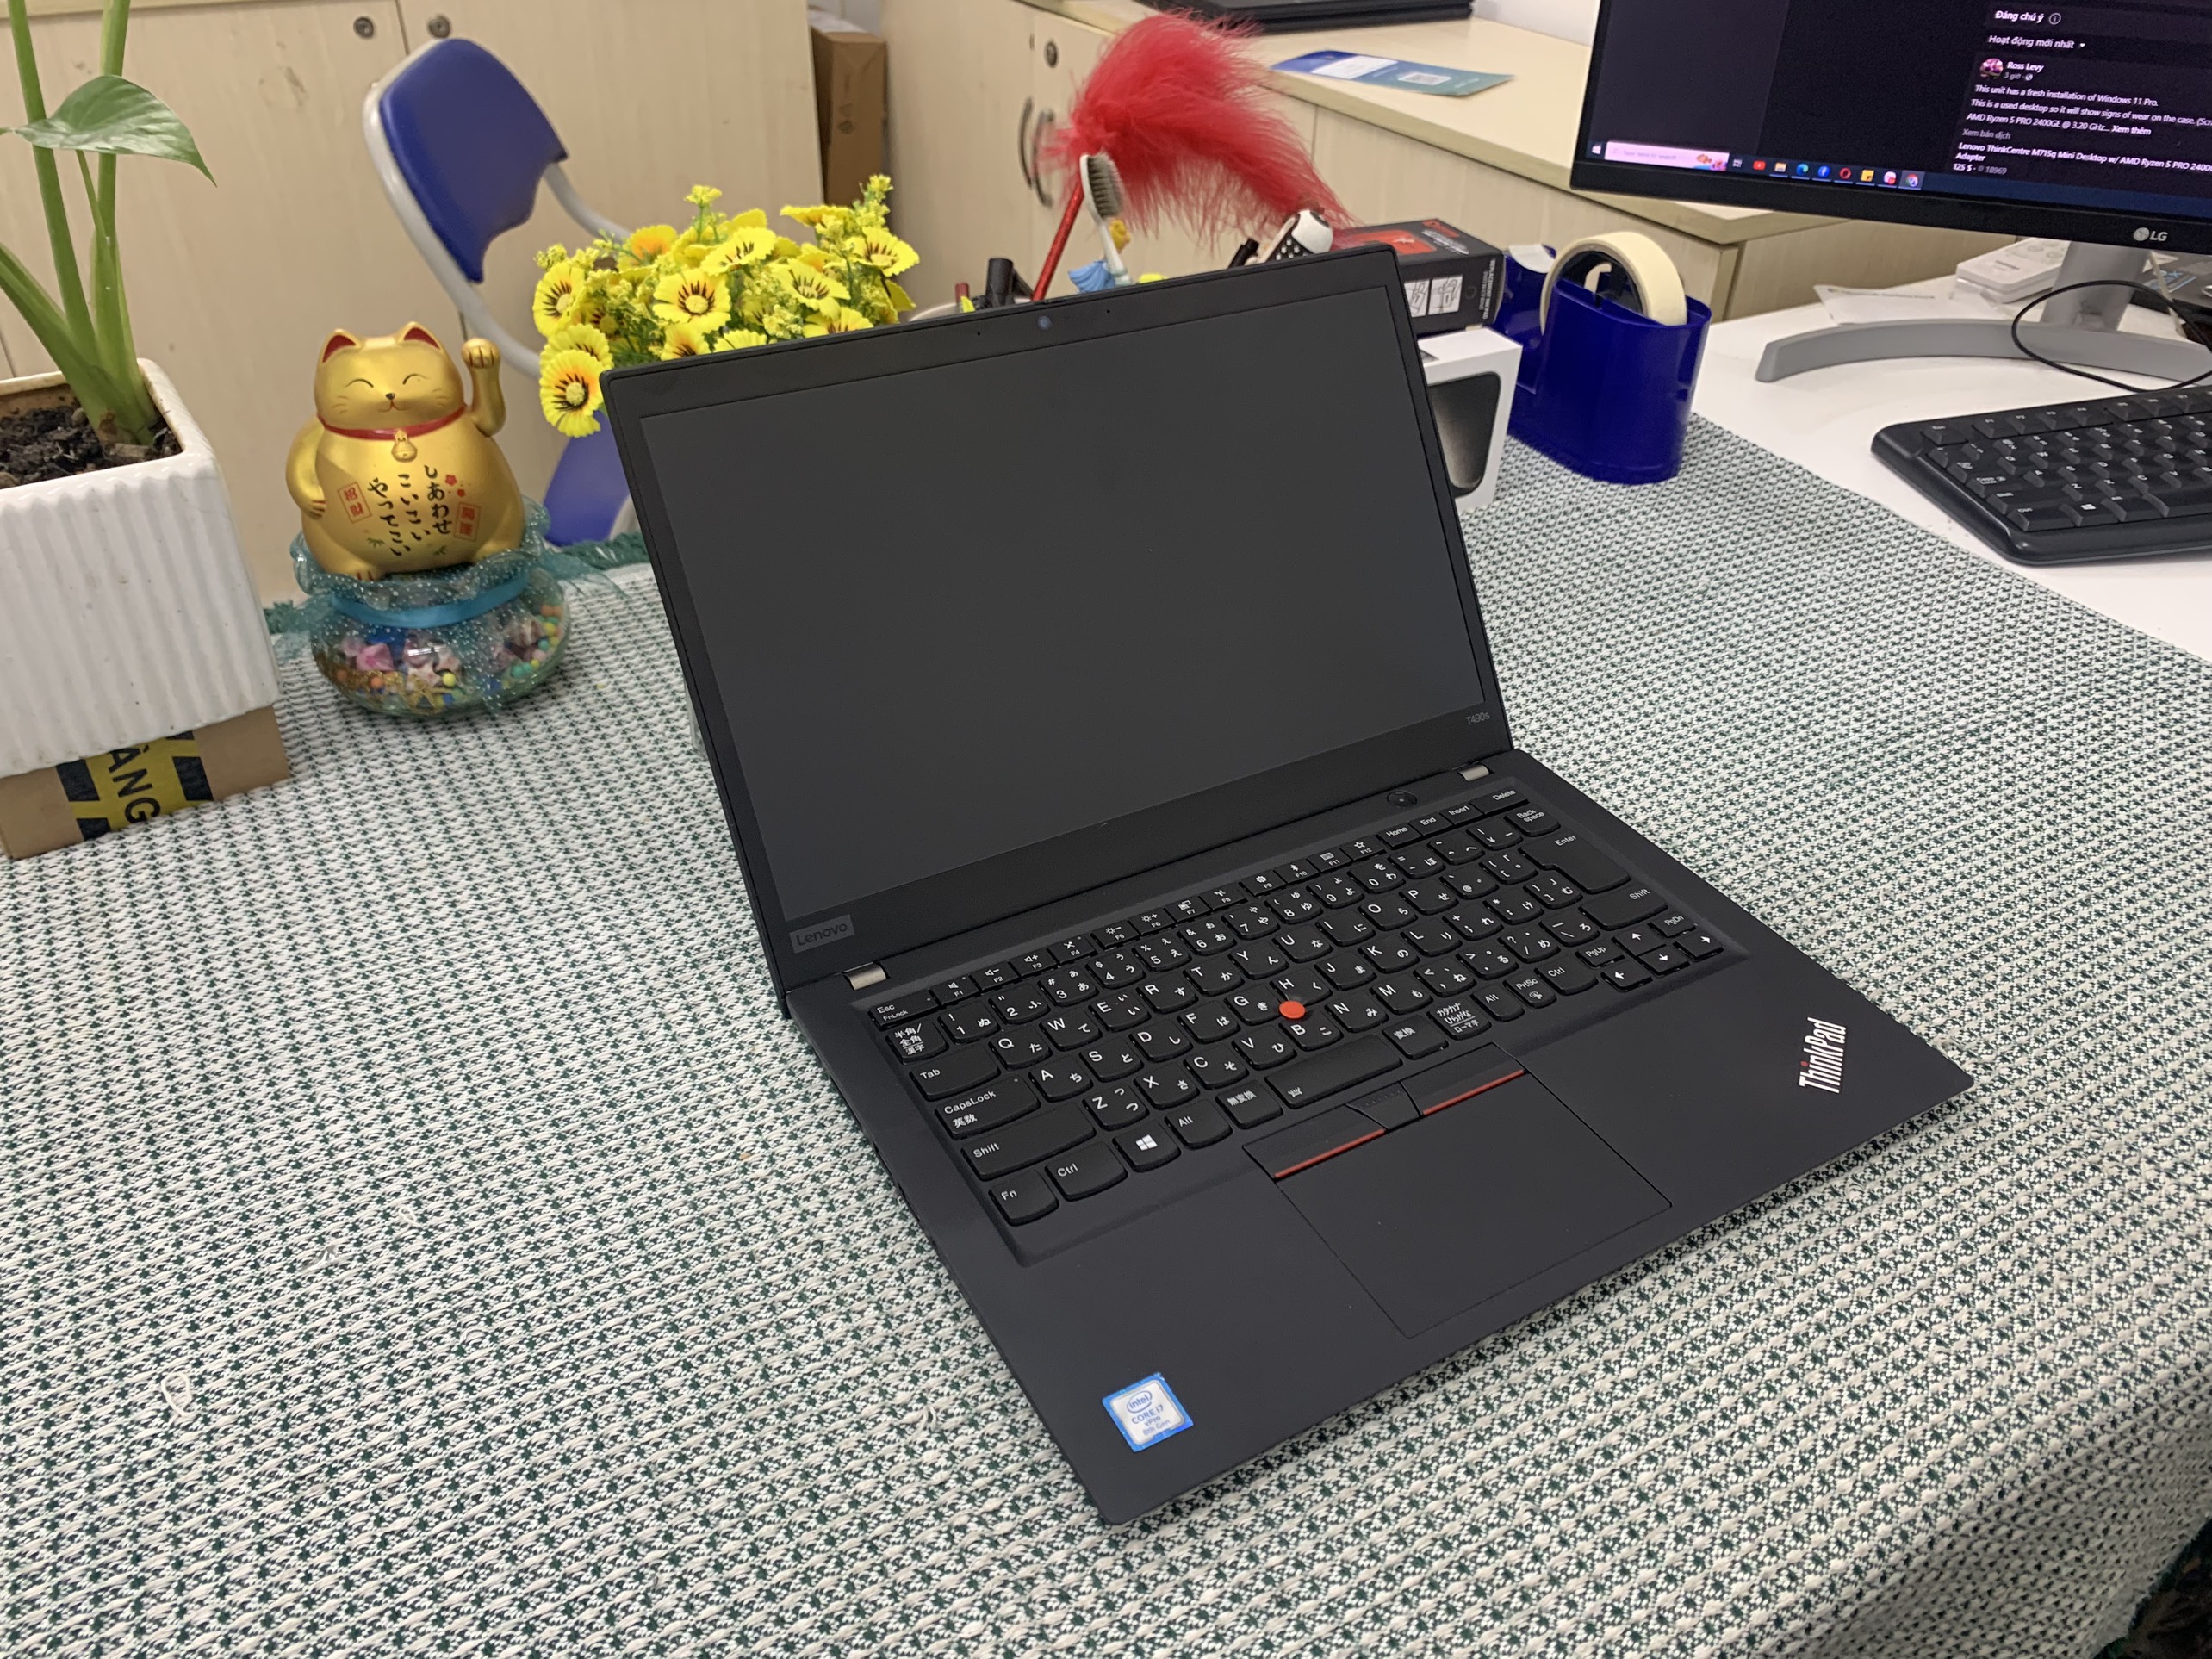 ThinkPad T490s